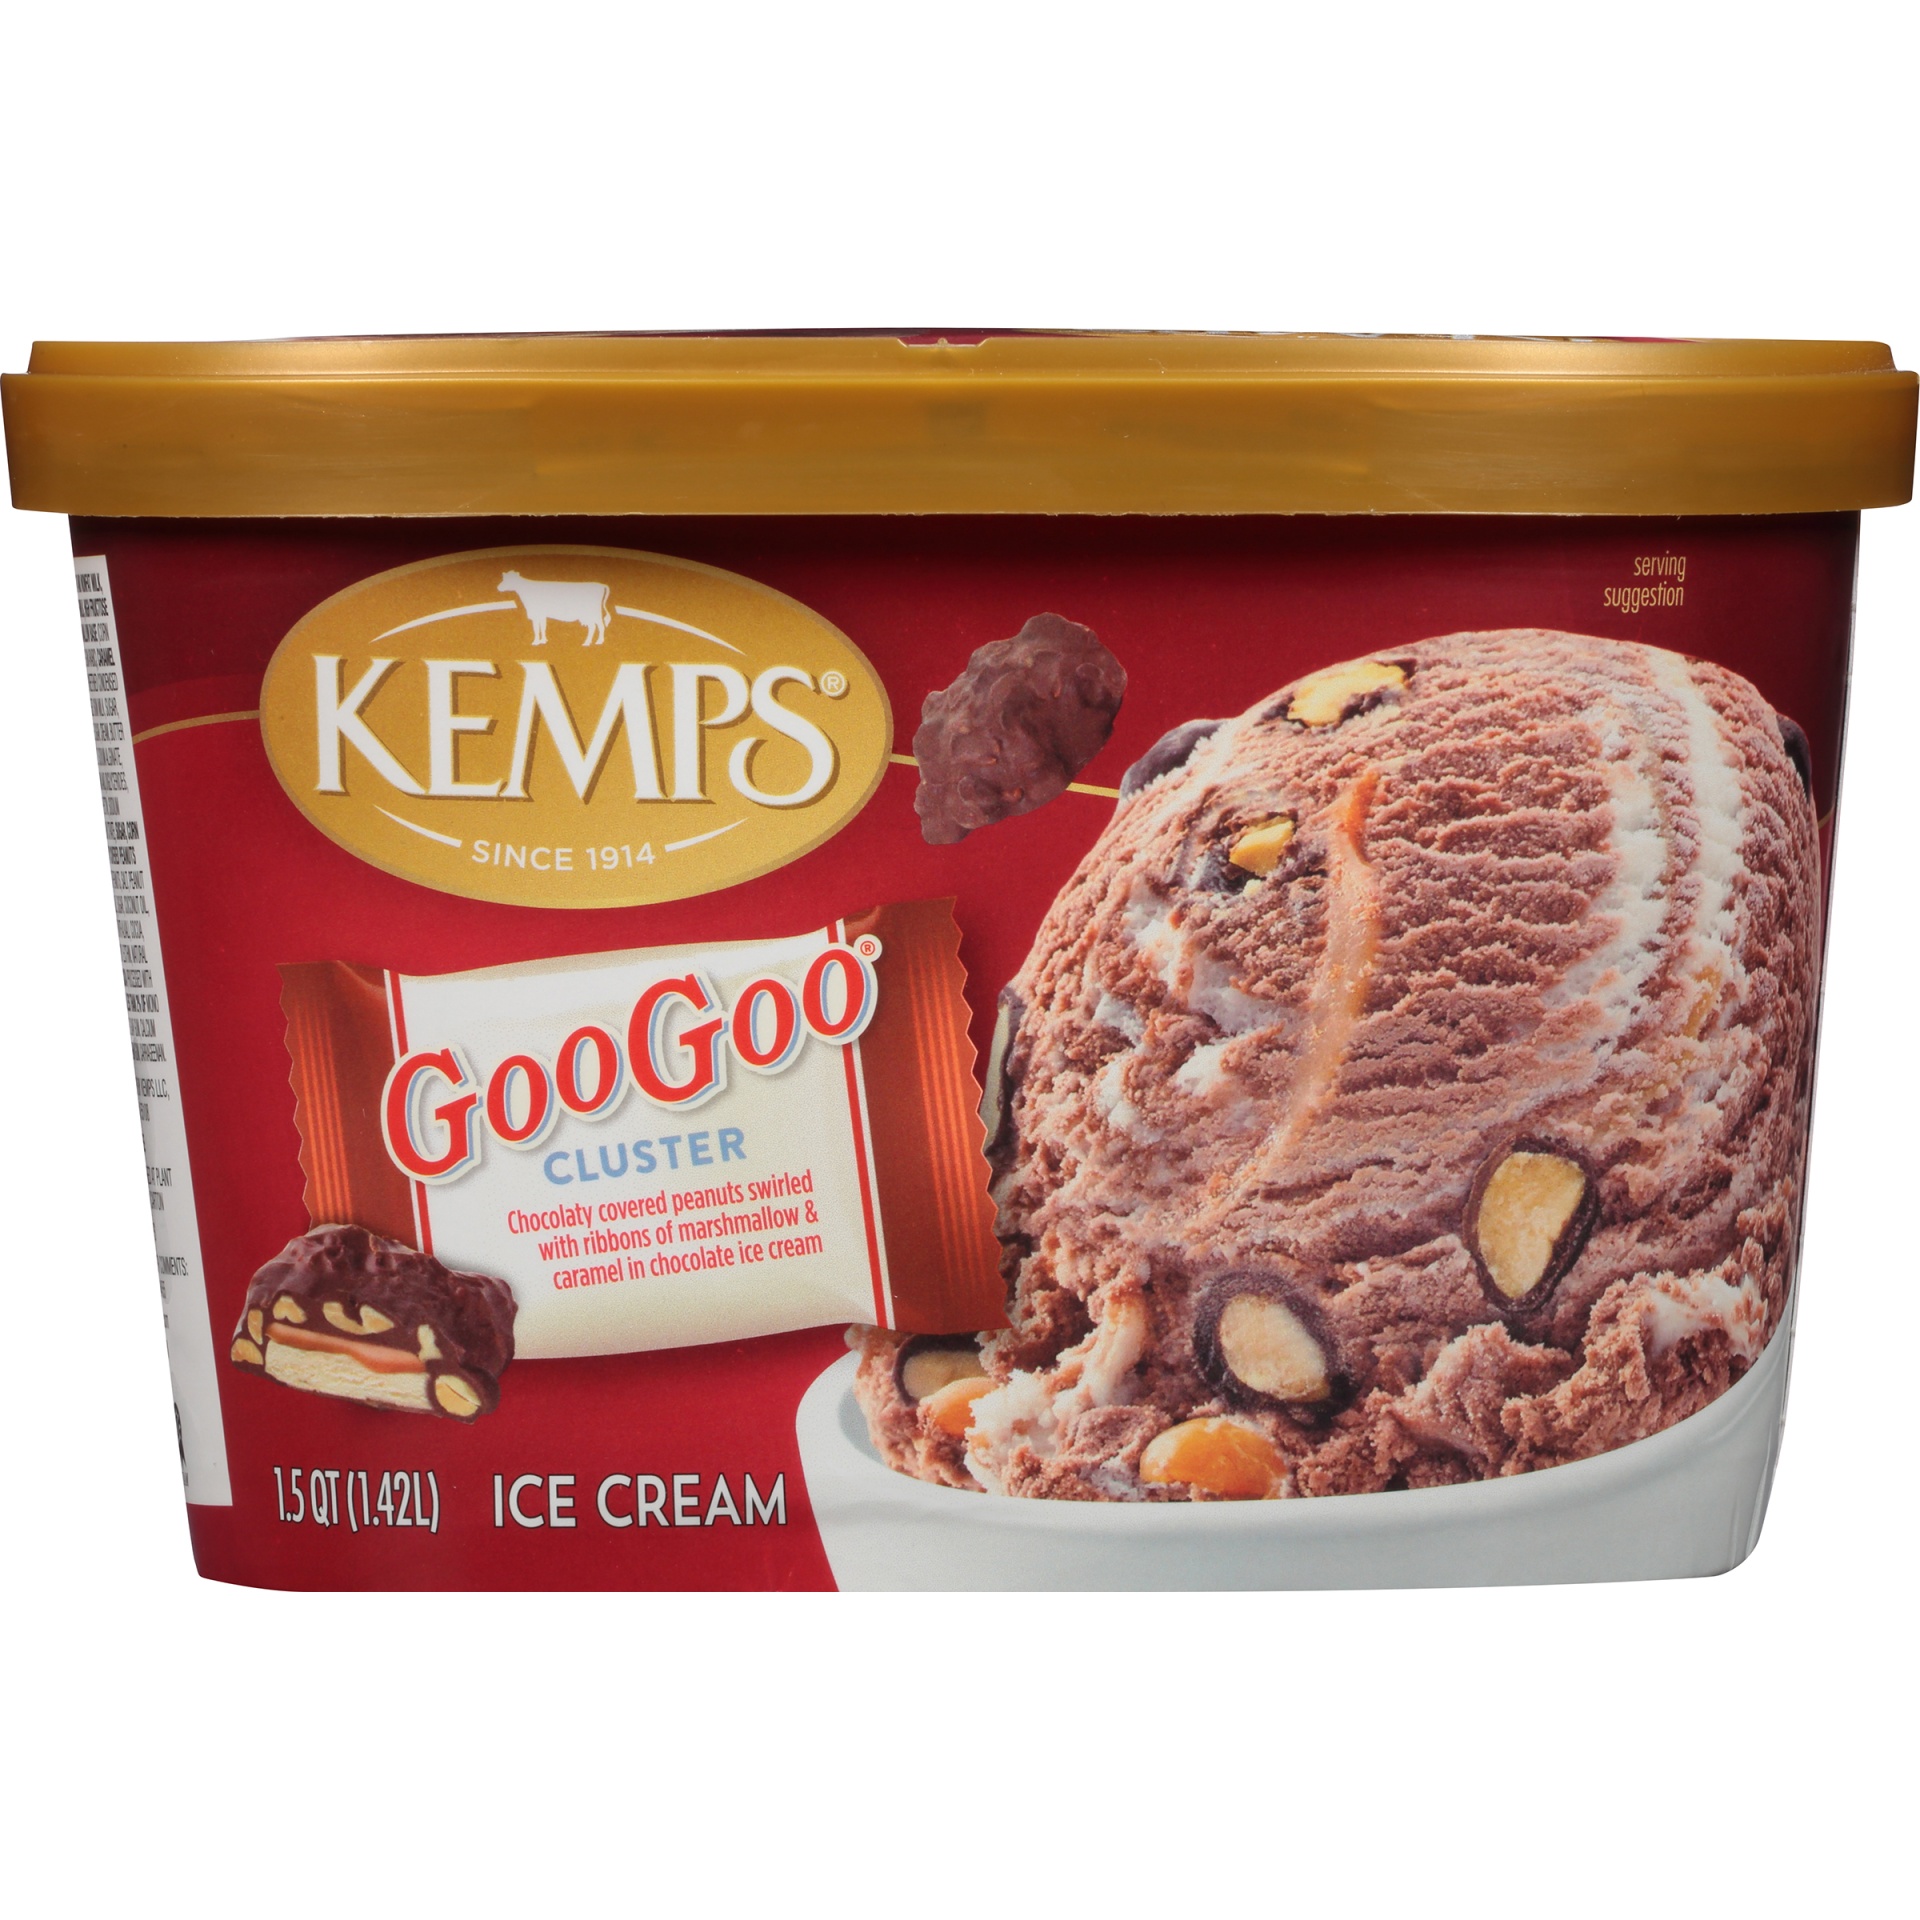 slide 8 of 8, Kemps Ice Cream 1.5 qt, 1.5 qt